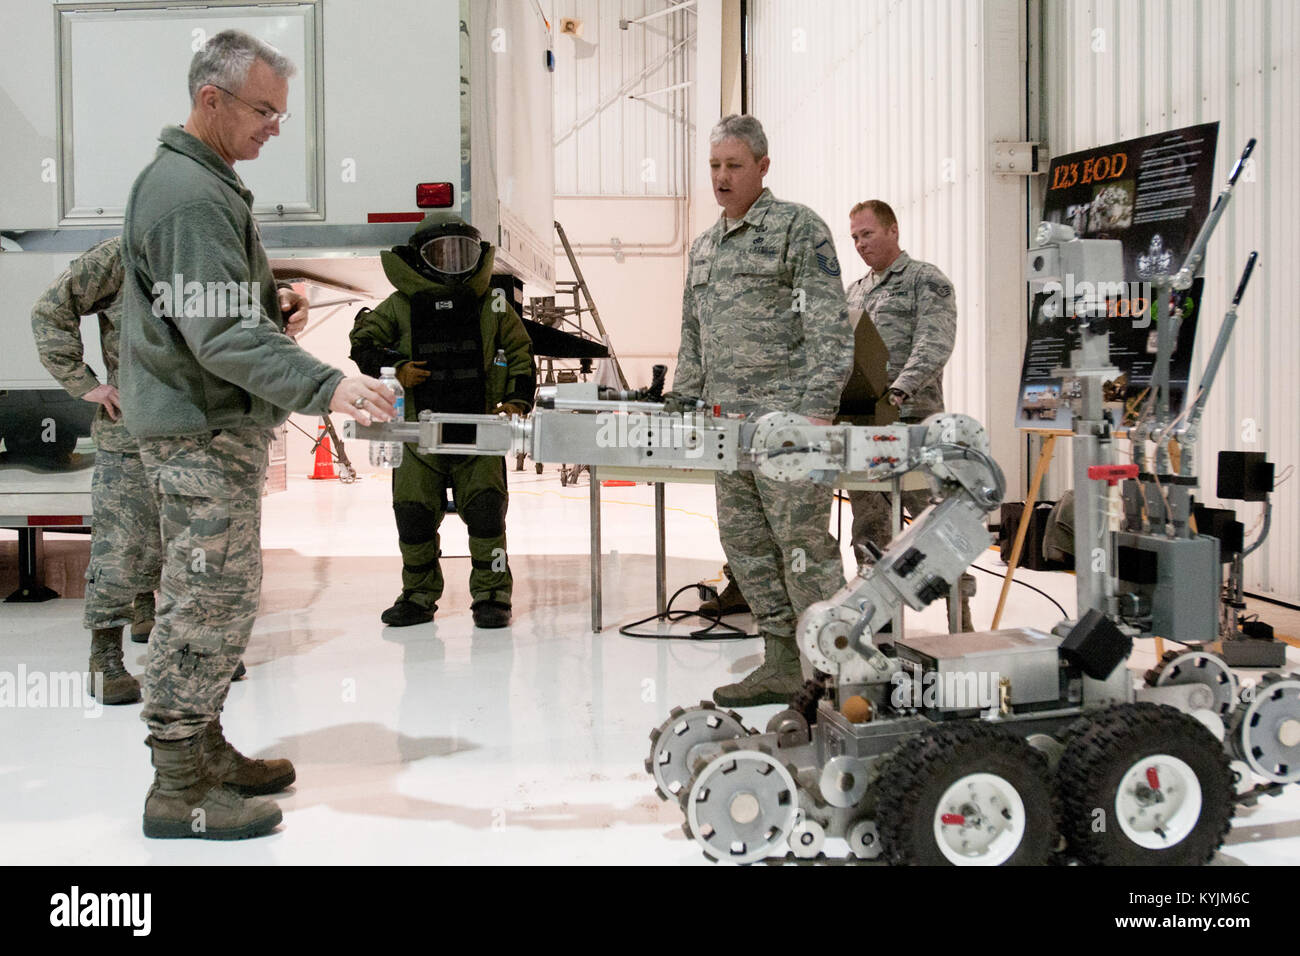 El General Paul J. Selva (izquierda), comandante del Comando de Movilidad Aérea, recibe una demostración de Explosivos de la 123F-6 del vuelo Andros robot durante una visita a la base de la Guardia Aérea de Kentucky el 5 de febrero de 2013, en Louisville, Ky. La Guardia Nacional Aérea de Kentucky (foto por el Sargento Primero. Phil Speck) Foto de stock